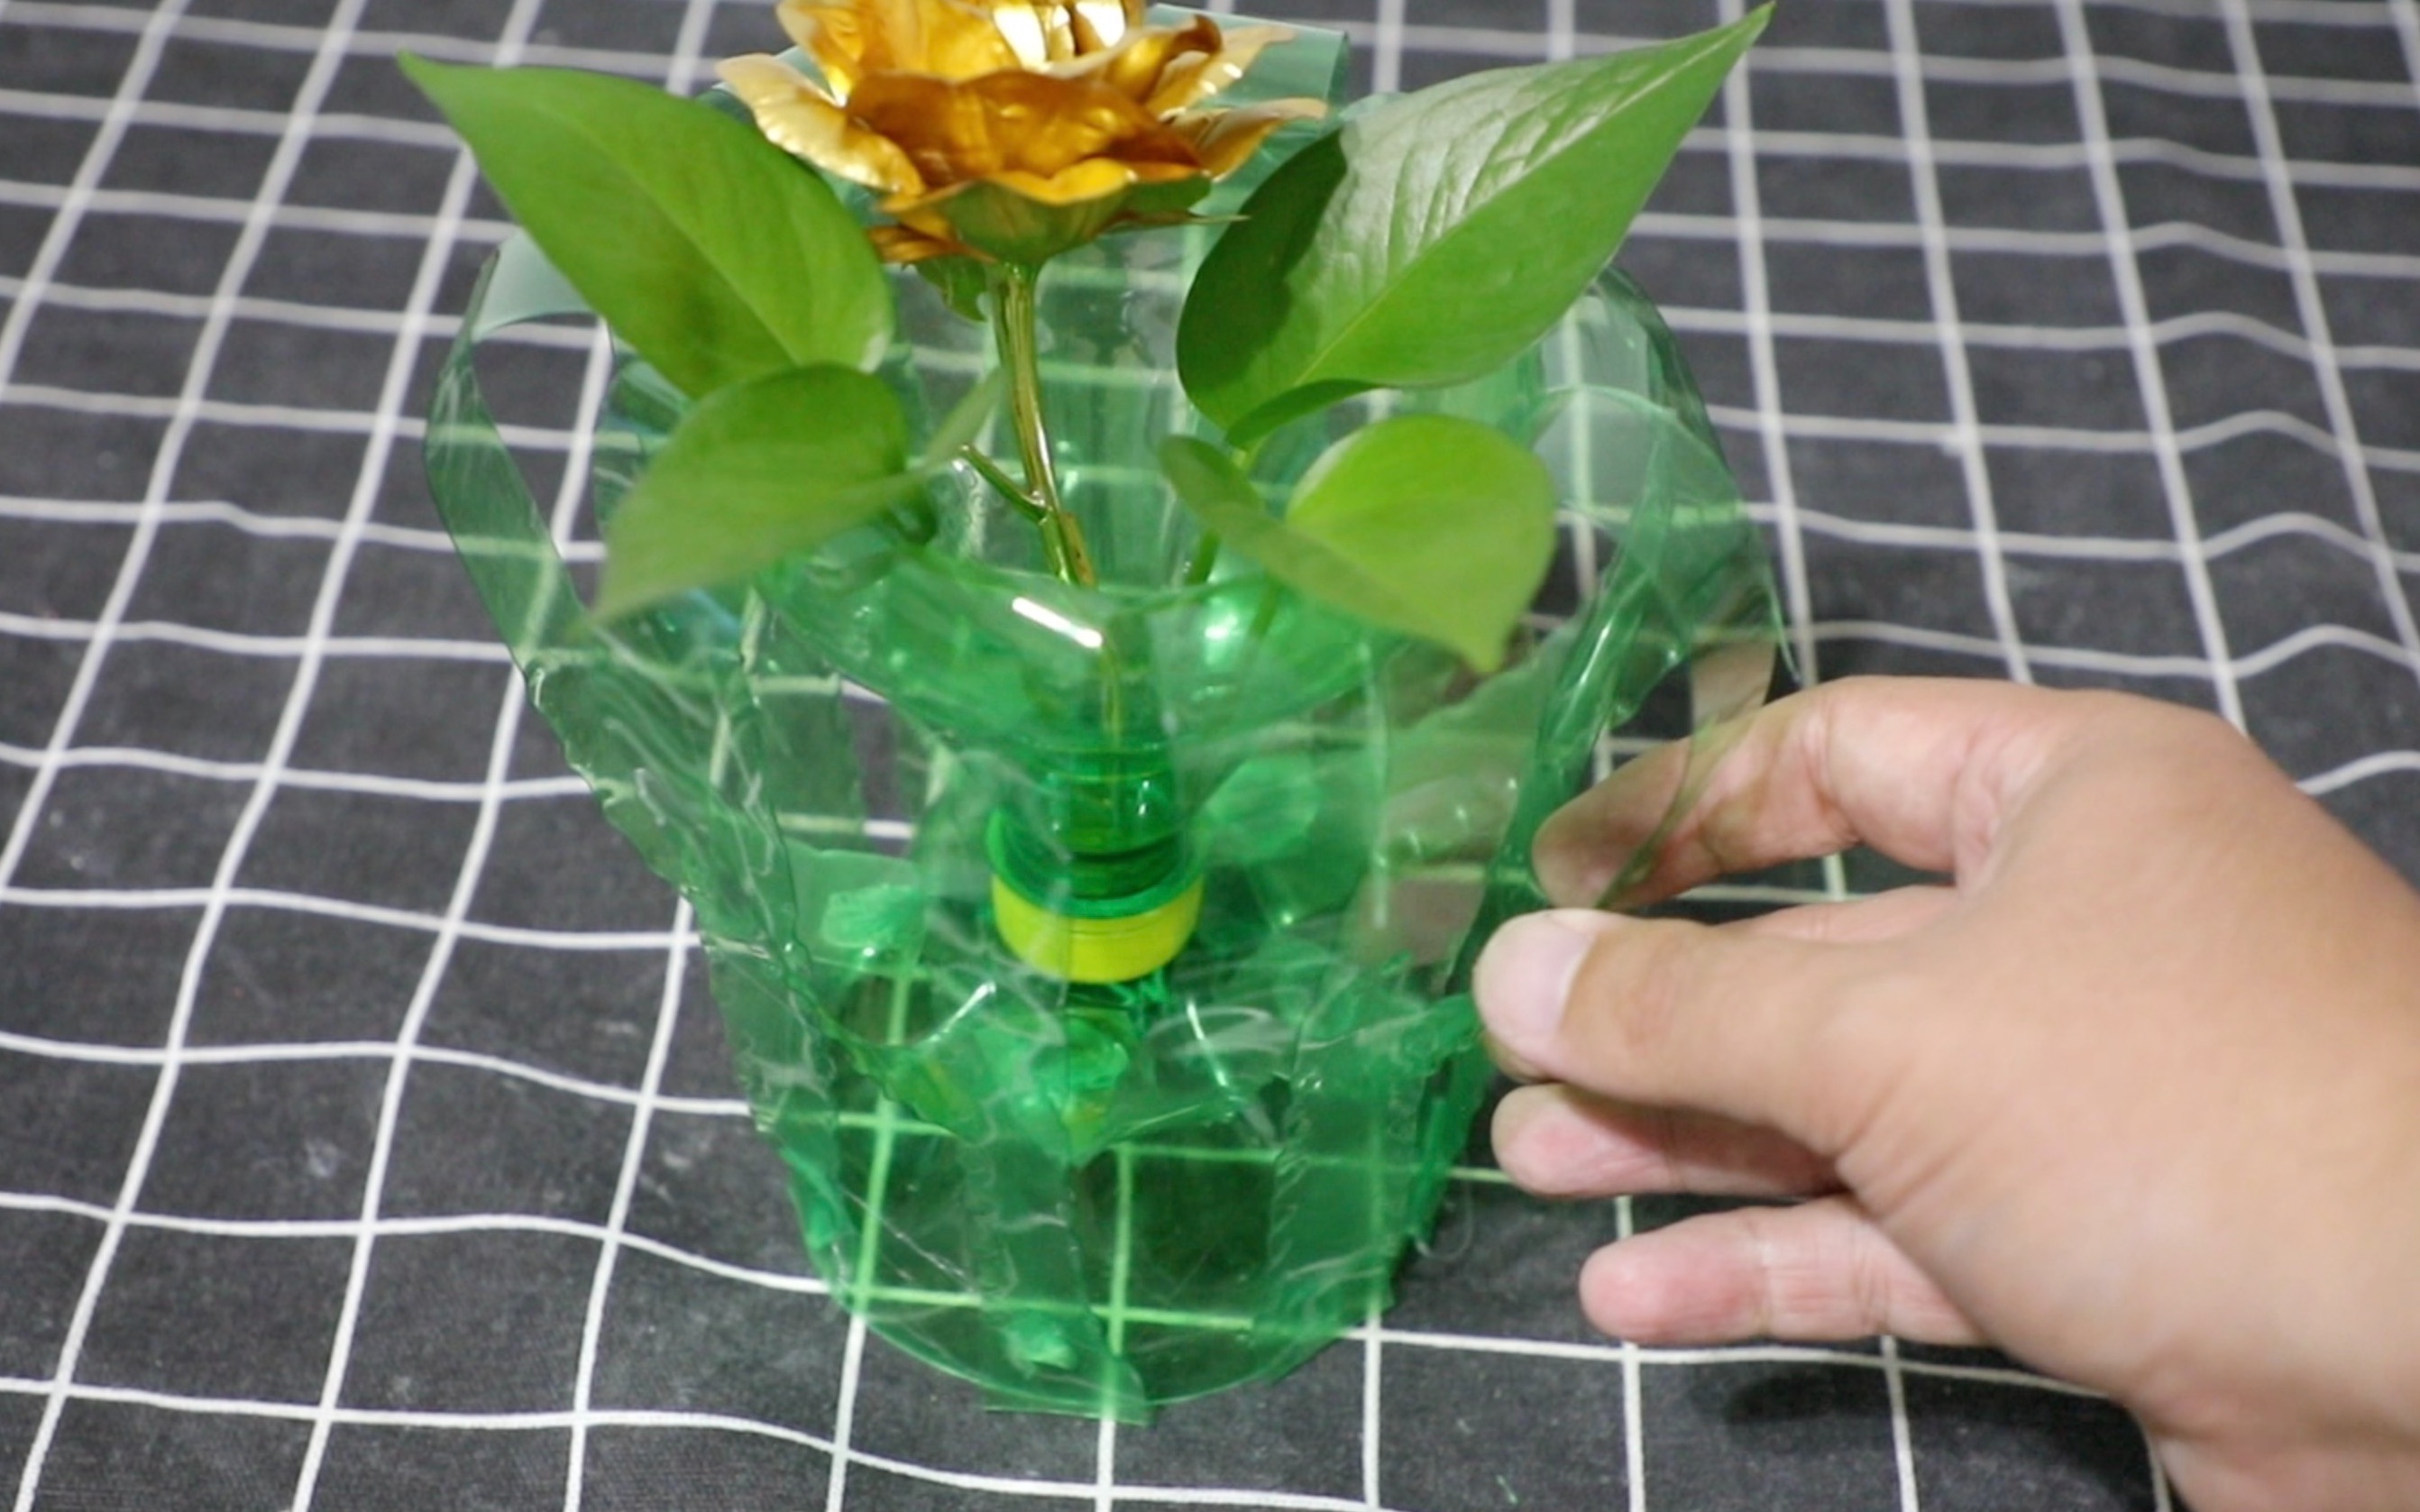 饮料桶制作花盆图片